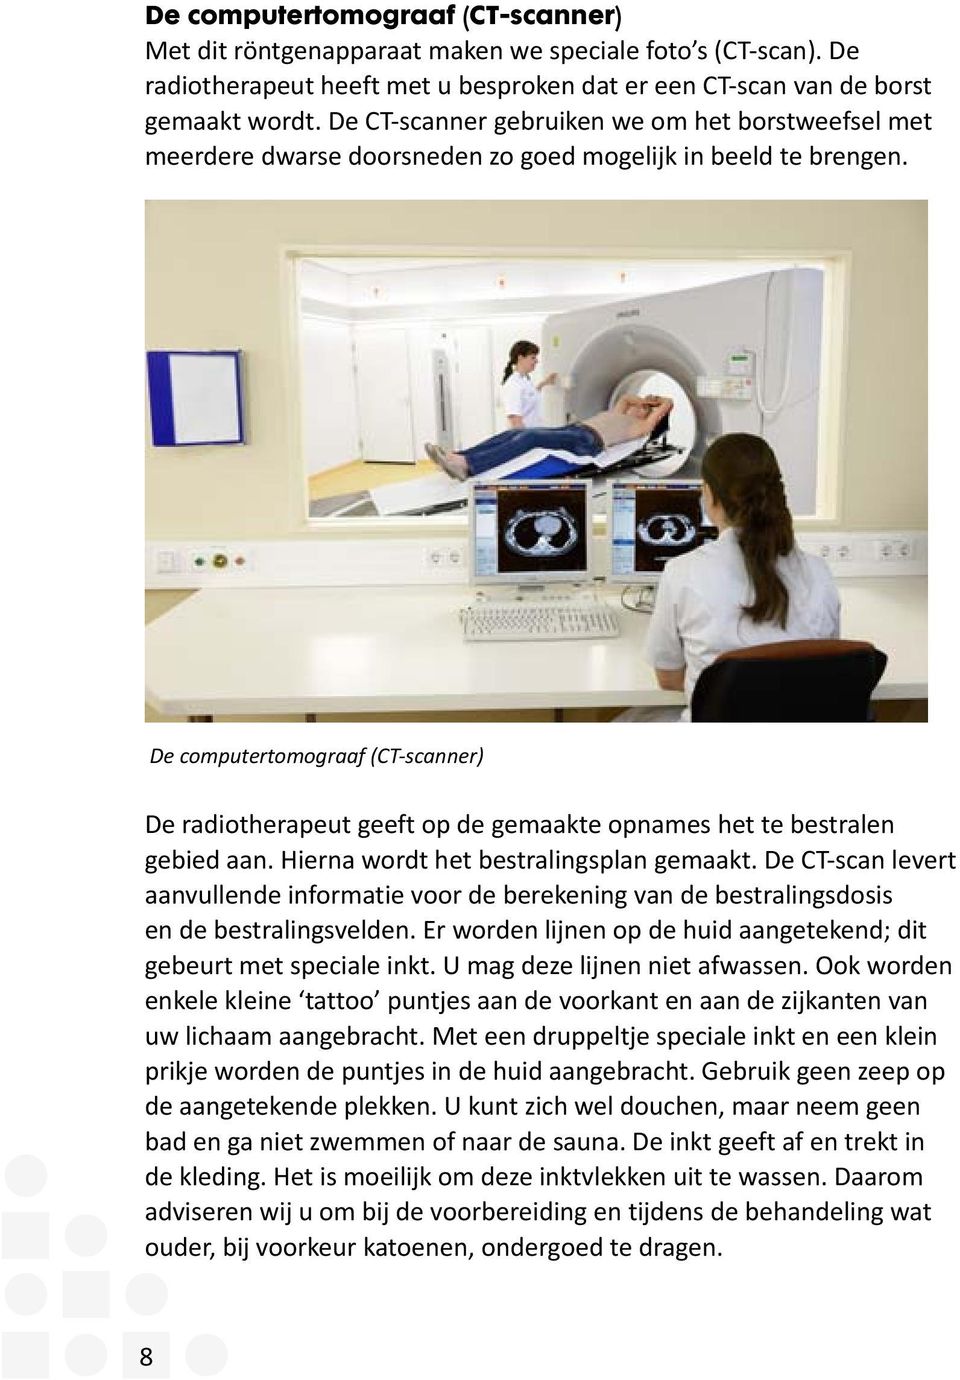 De computertomograaf (CT-scanner) De radiotherapeut geeft op de gemaakte opnames het te bestralen gebied aan. Hierna wordt het bestralingsplan gemaakt.